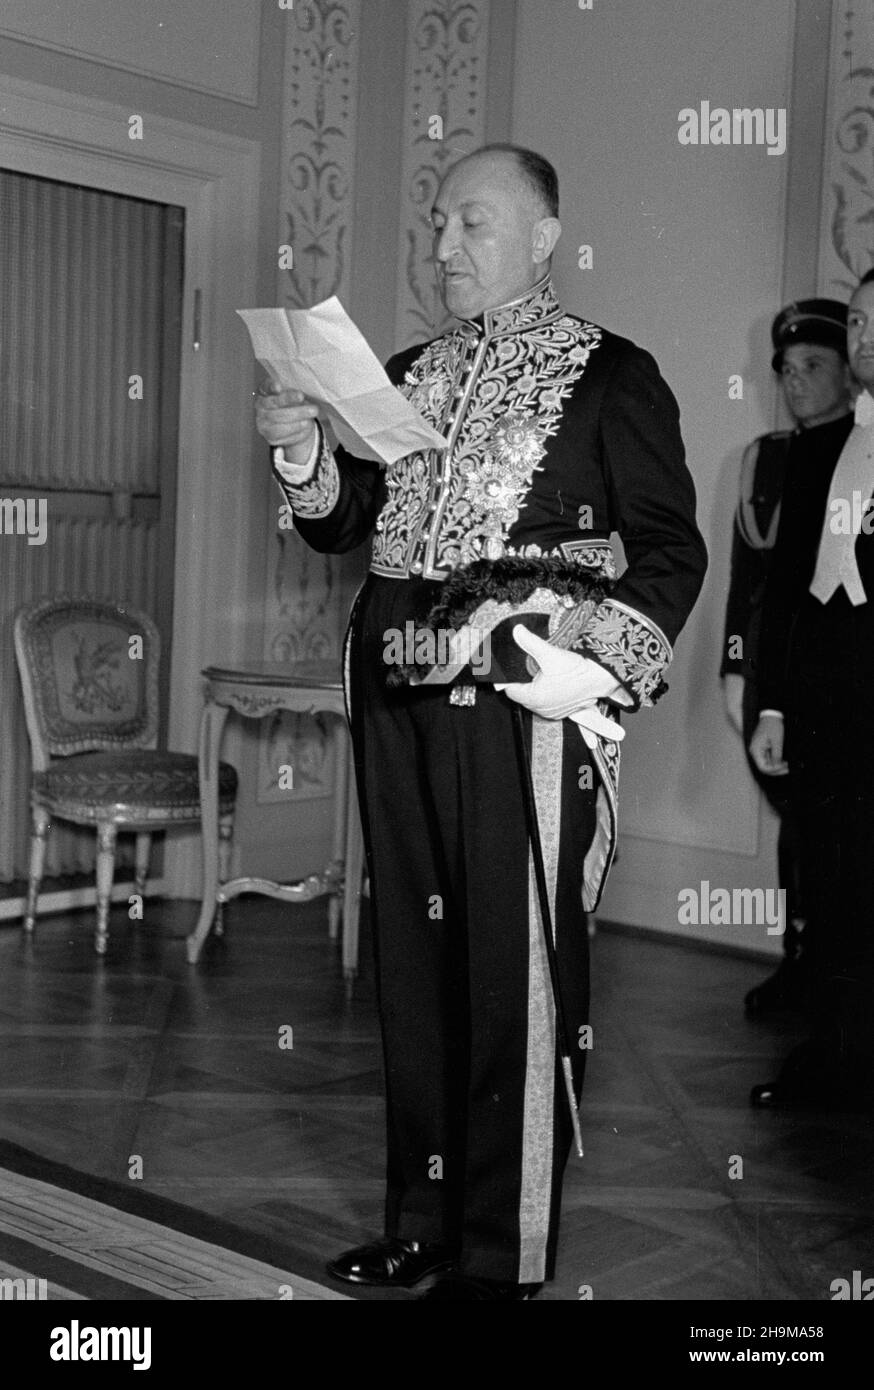 Warszawa, 1948-09-09. Uroczystoœæ z³o¿enia listów uwierzytelniaj¹cych przez pos³a nadzwyczajnego i ministra pe³nomocnego Iranu Fazolaha Nabila. Nz. pose³ odczytuje treœæ listu w sali Pompejañskiej. wb  PAP    Warsaw, Sept. 9, 1948. The ceremony of presenting letters of credence by Iran's Extraordinary Envoy and Plenipotentiary Minister Fazolah Nabil. Pictured: the envoy reads out the wording of the letters in the Pompeian Hall.   wb  PAP Stock Photo